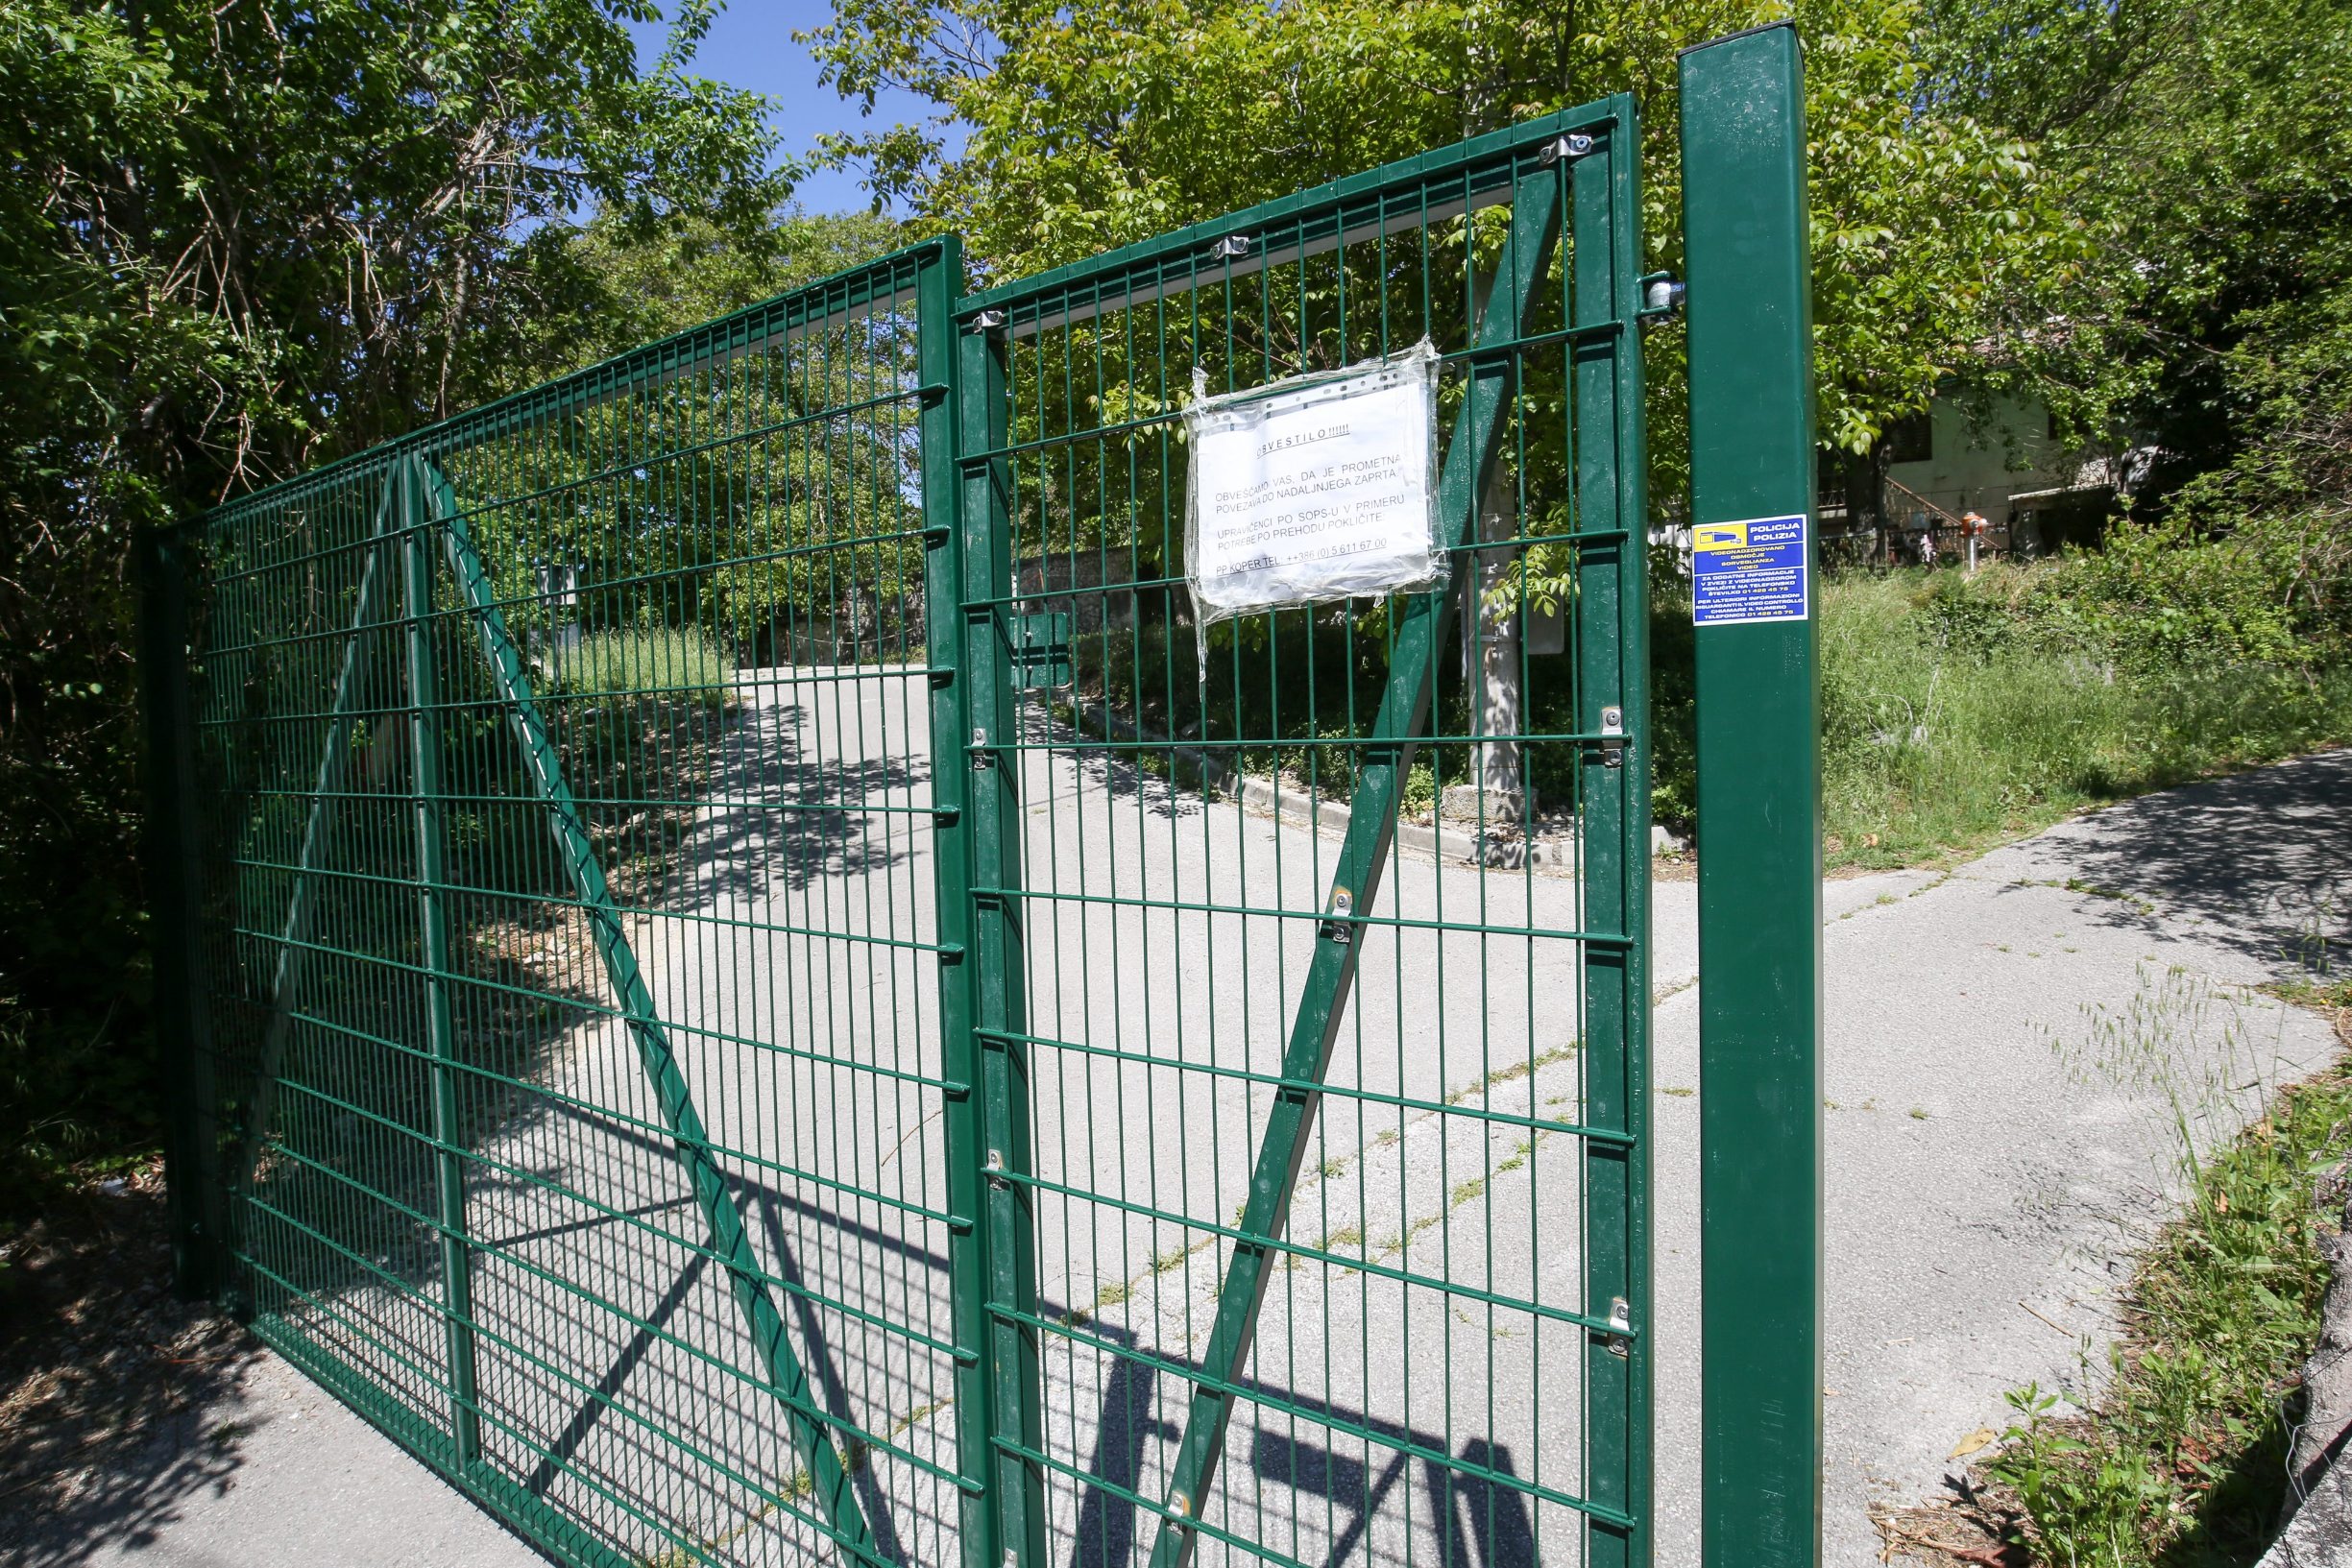 Buzet, 070520.
Metalna ograda na sred sela Mlini. Slovenci su u strahu od izbjeglica koji navodno ovdje prolaze, podigli metalna vrata tako da su podijelili selo na dva dijela. Za proci na drugu stranu sela mjestani moraju zvati koparsku policiju.
Foto: Goran Sebelic / CROPIX